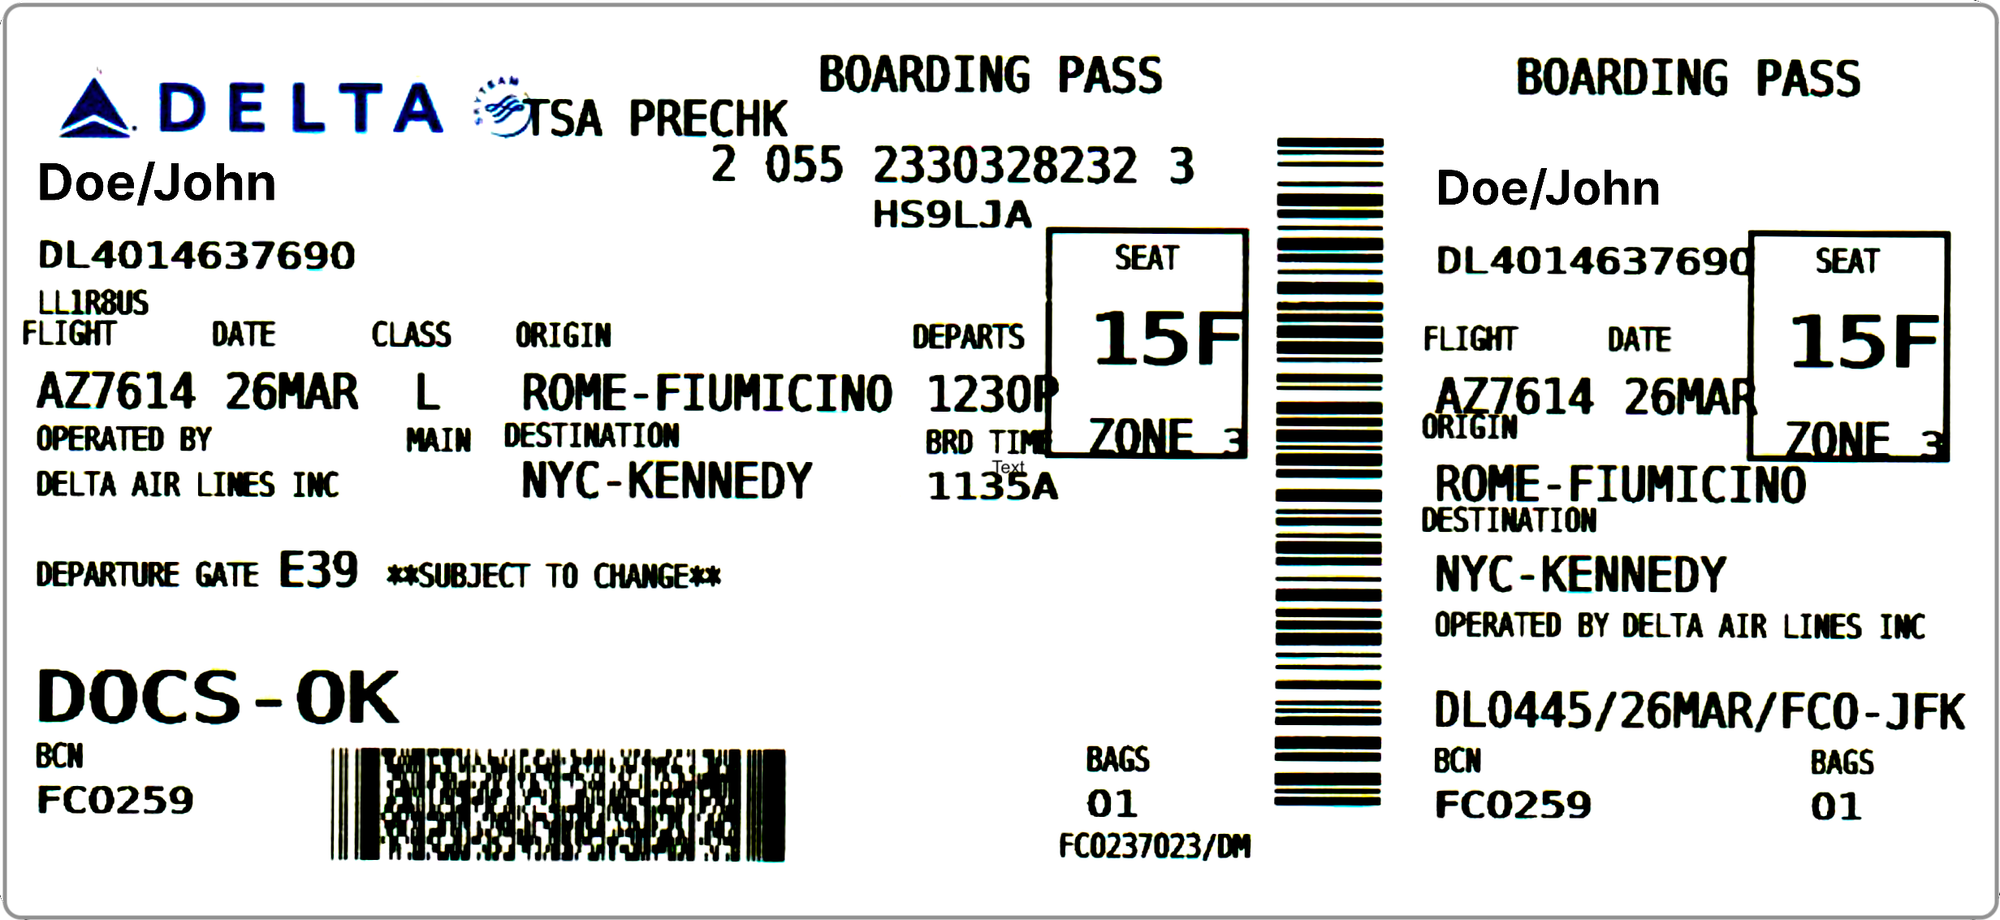 delta worldwide pass travel privileges